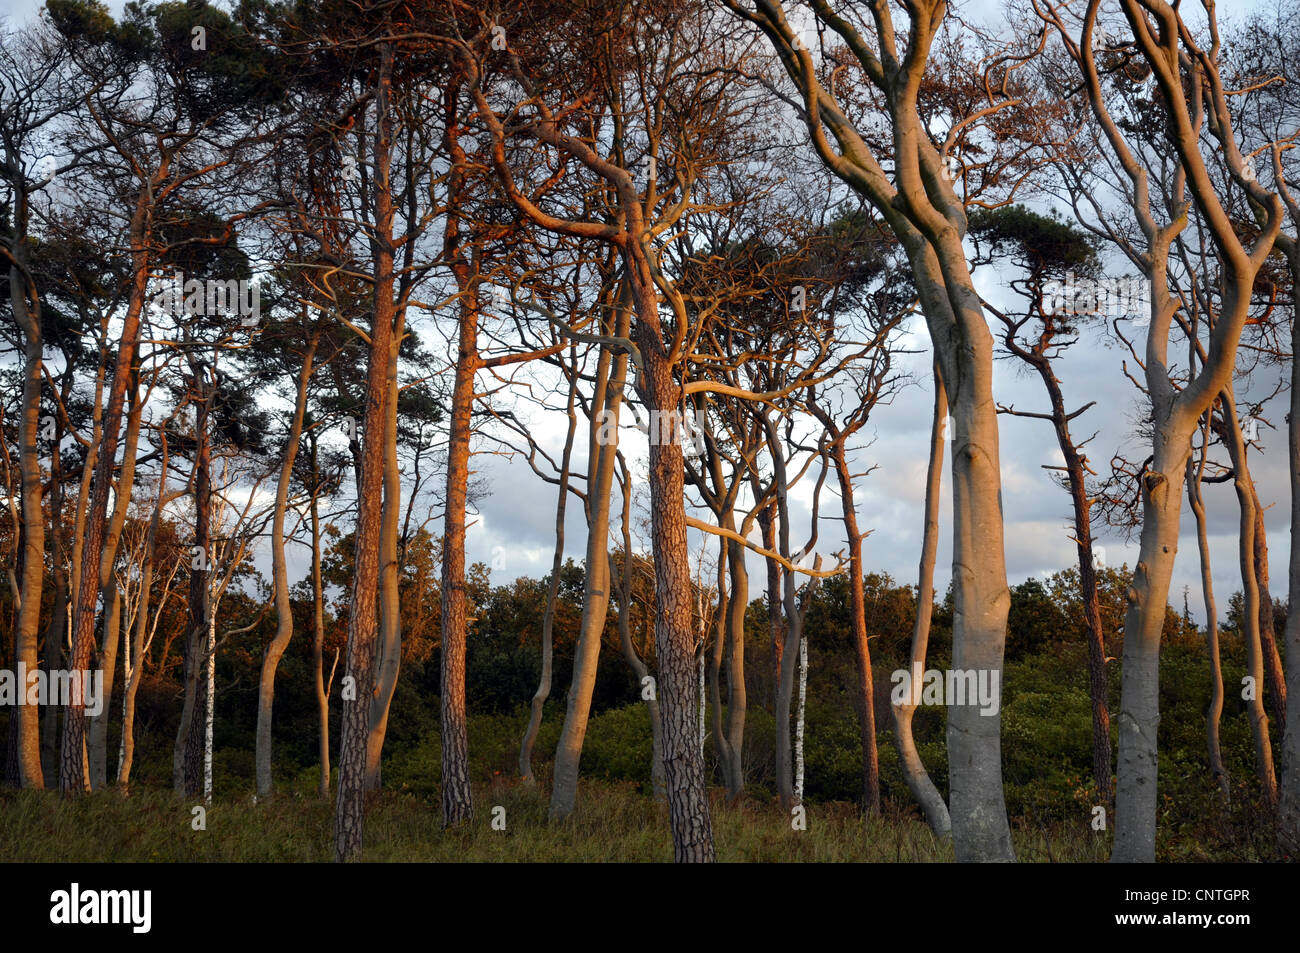 Pin sylvestre, le pin sylvestre (Pinus sylvestris), forêt mixte dans la lumière du soir, l'Allemagne, Mecklenburg Vorpommern, Poméranie occidentale Lagoon Salon National Park Banque D'Images